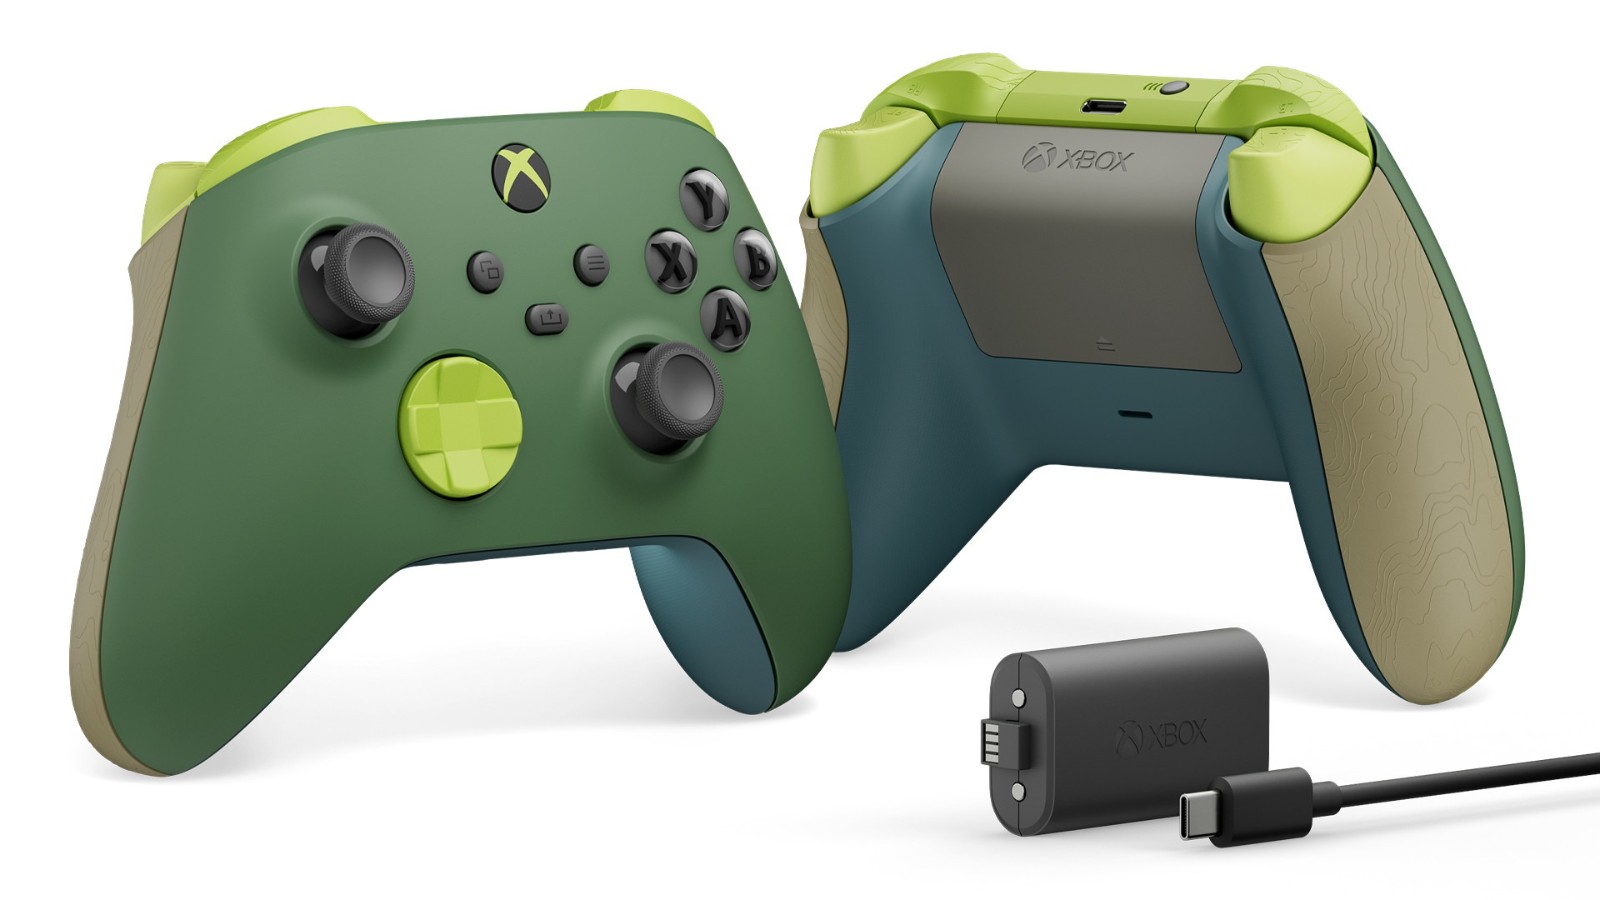 微软发布Remix Xbox特别版手柄 部分为回收材质